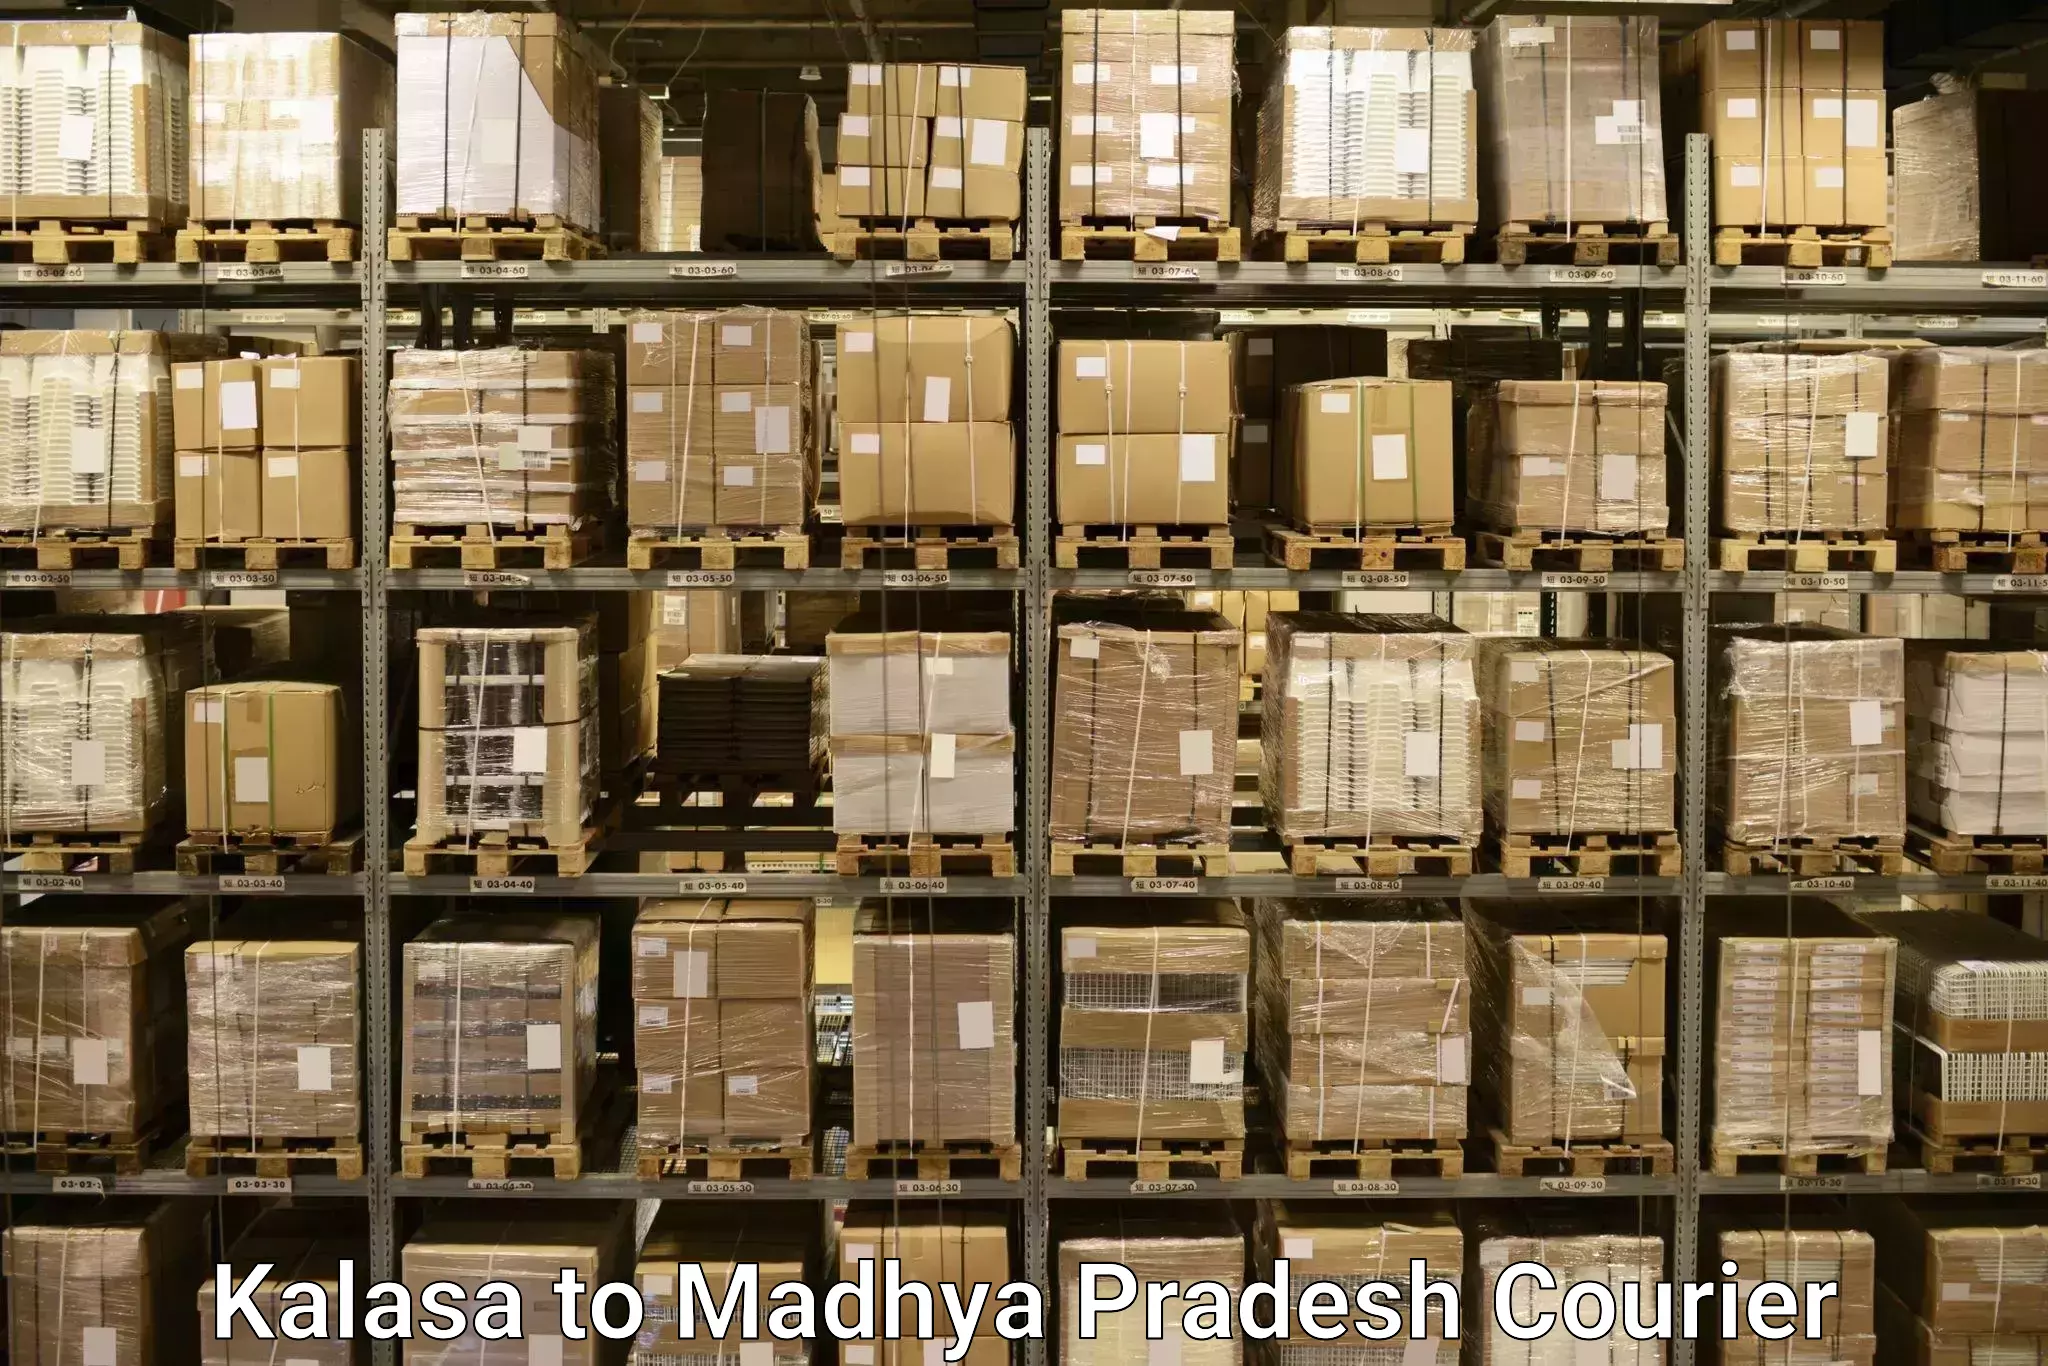 Baggage shipping schedule Kalasa to Mandideep